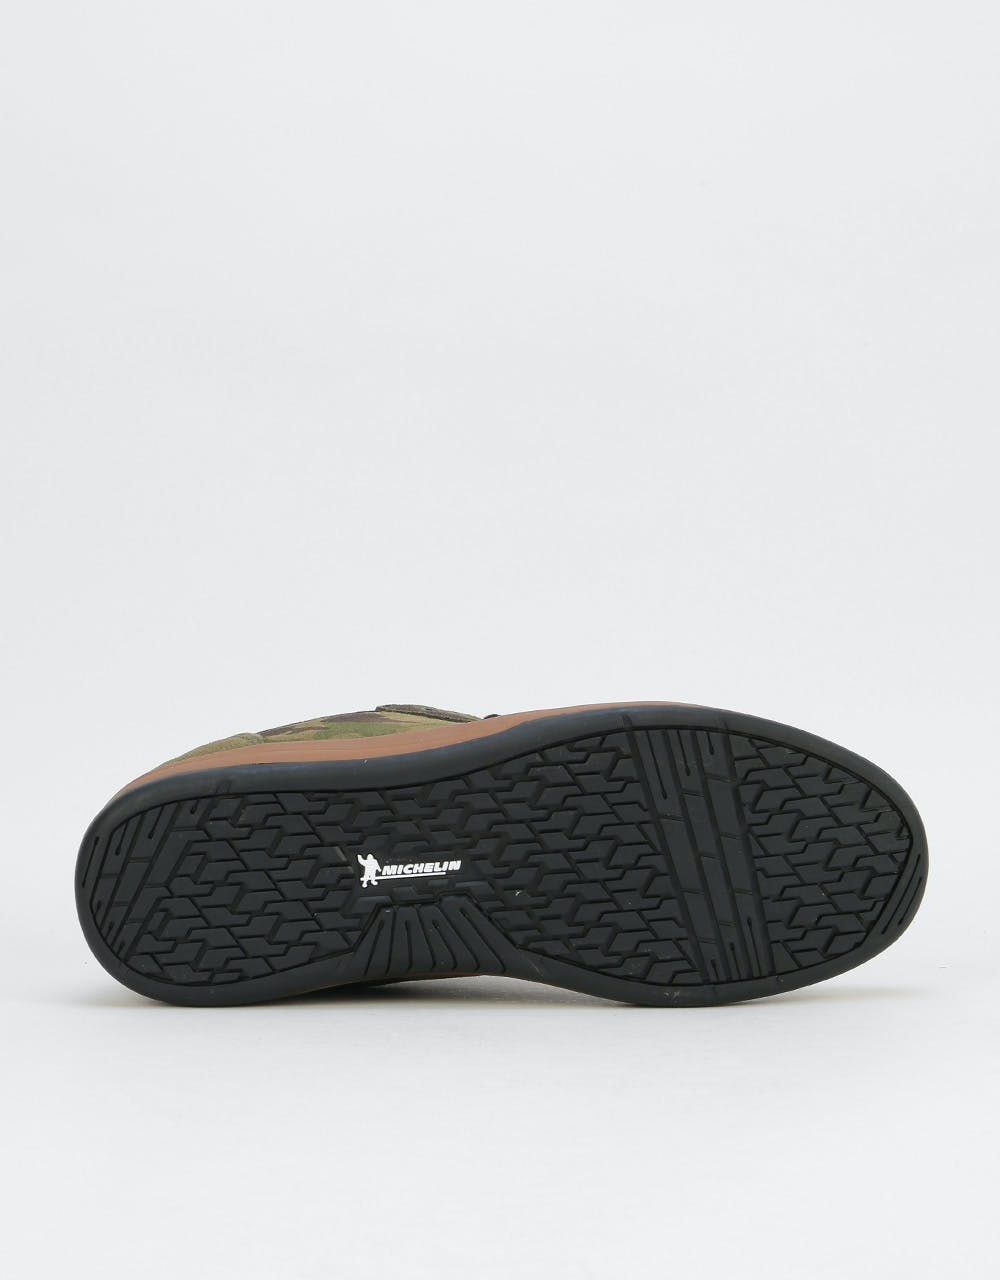 Etnies x Michelin Score Skate Shoes - Black/Camo